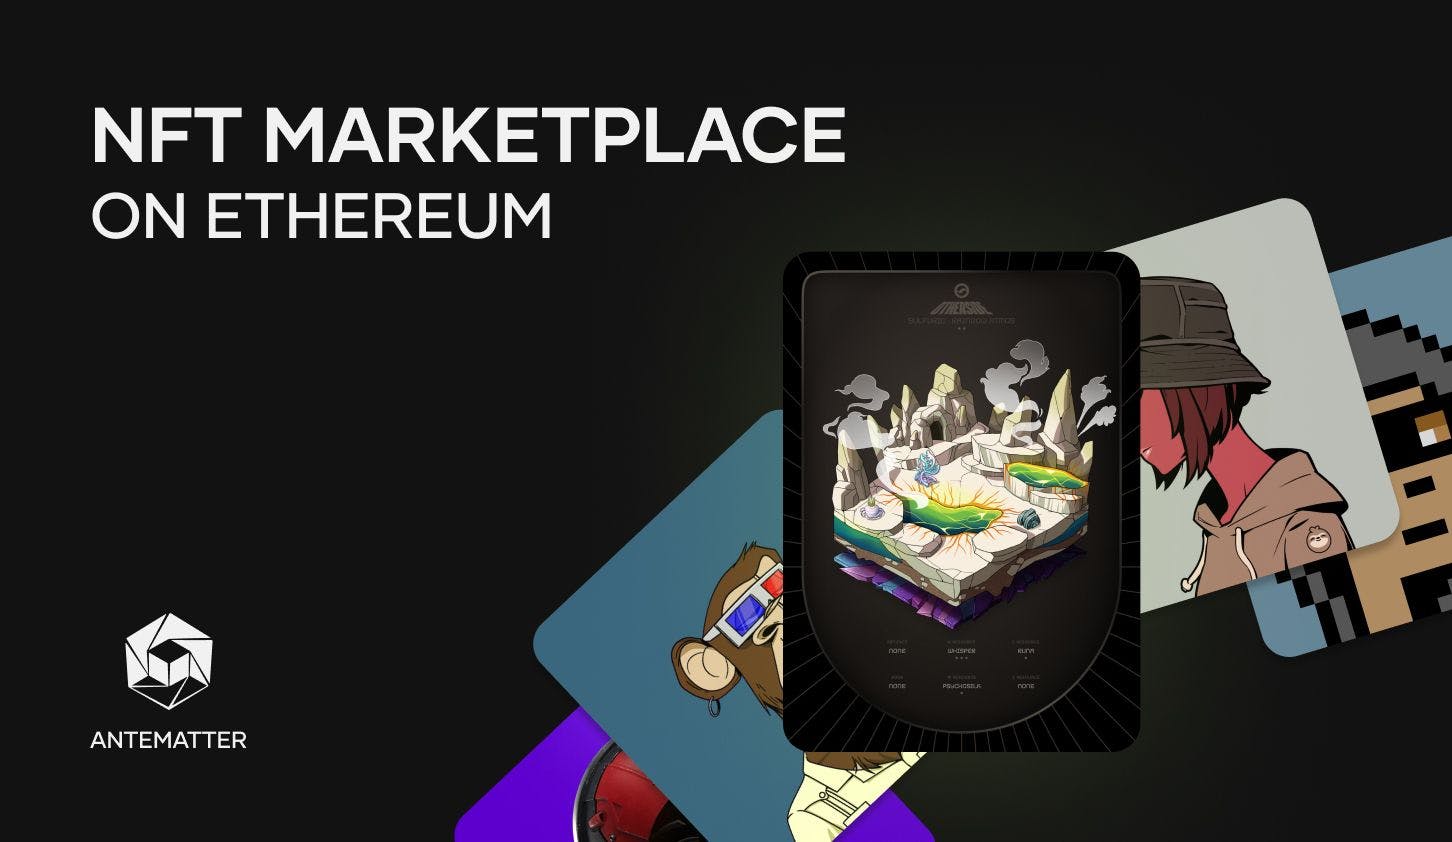 NFT Marketplace on Ethereum